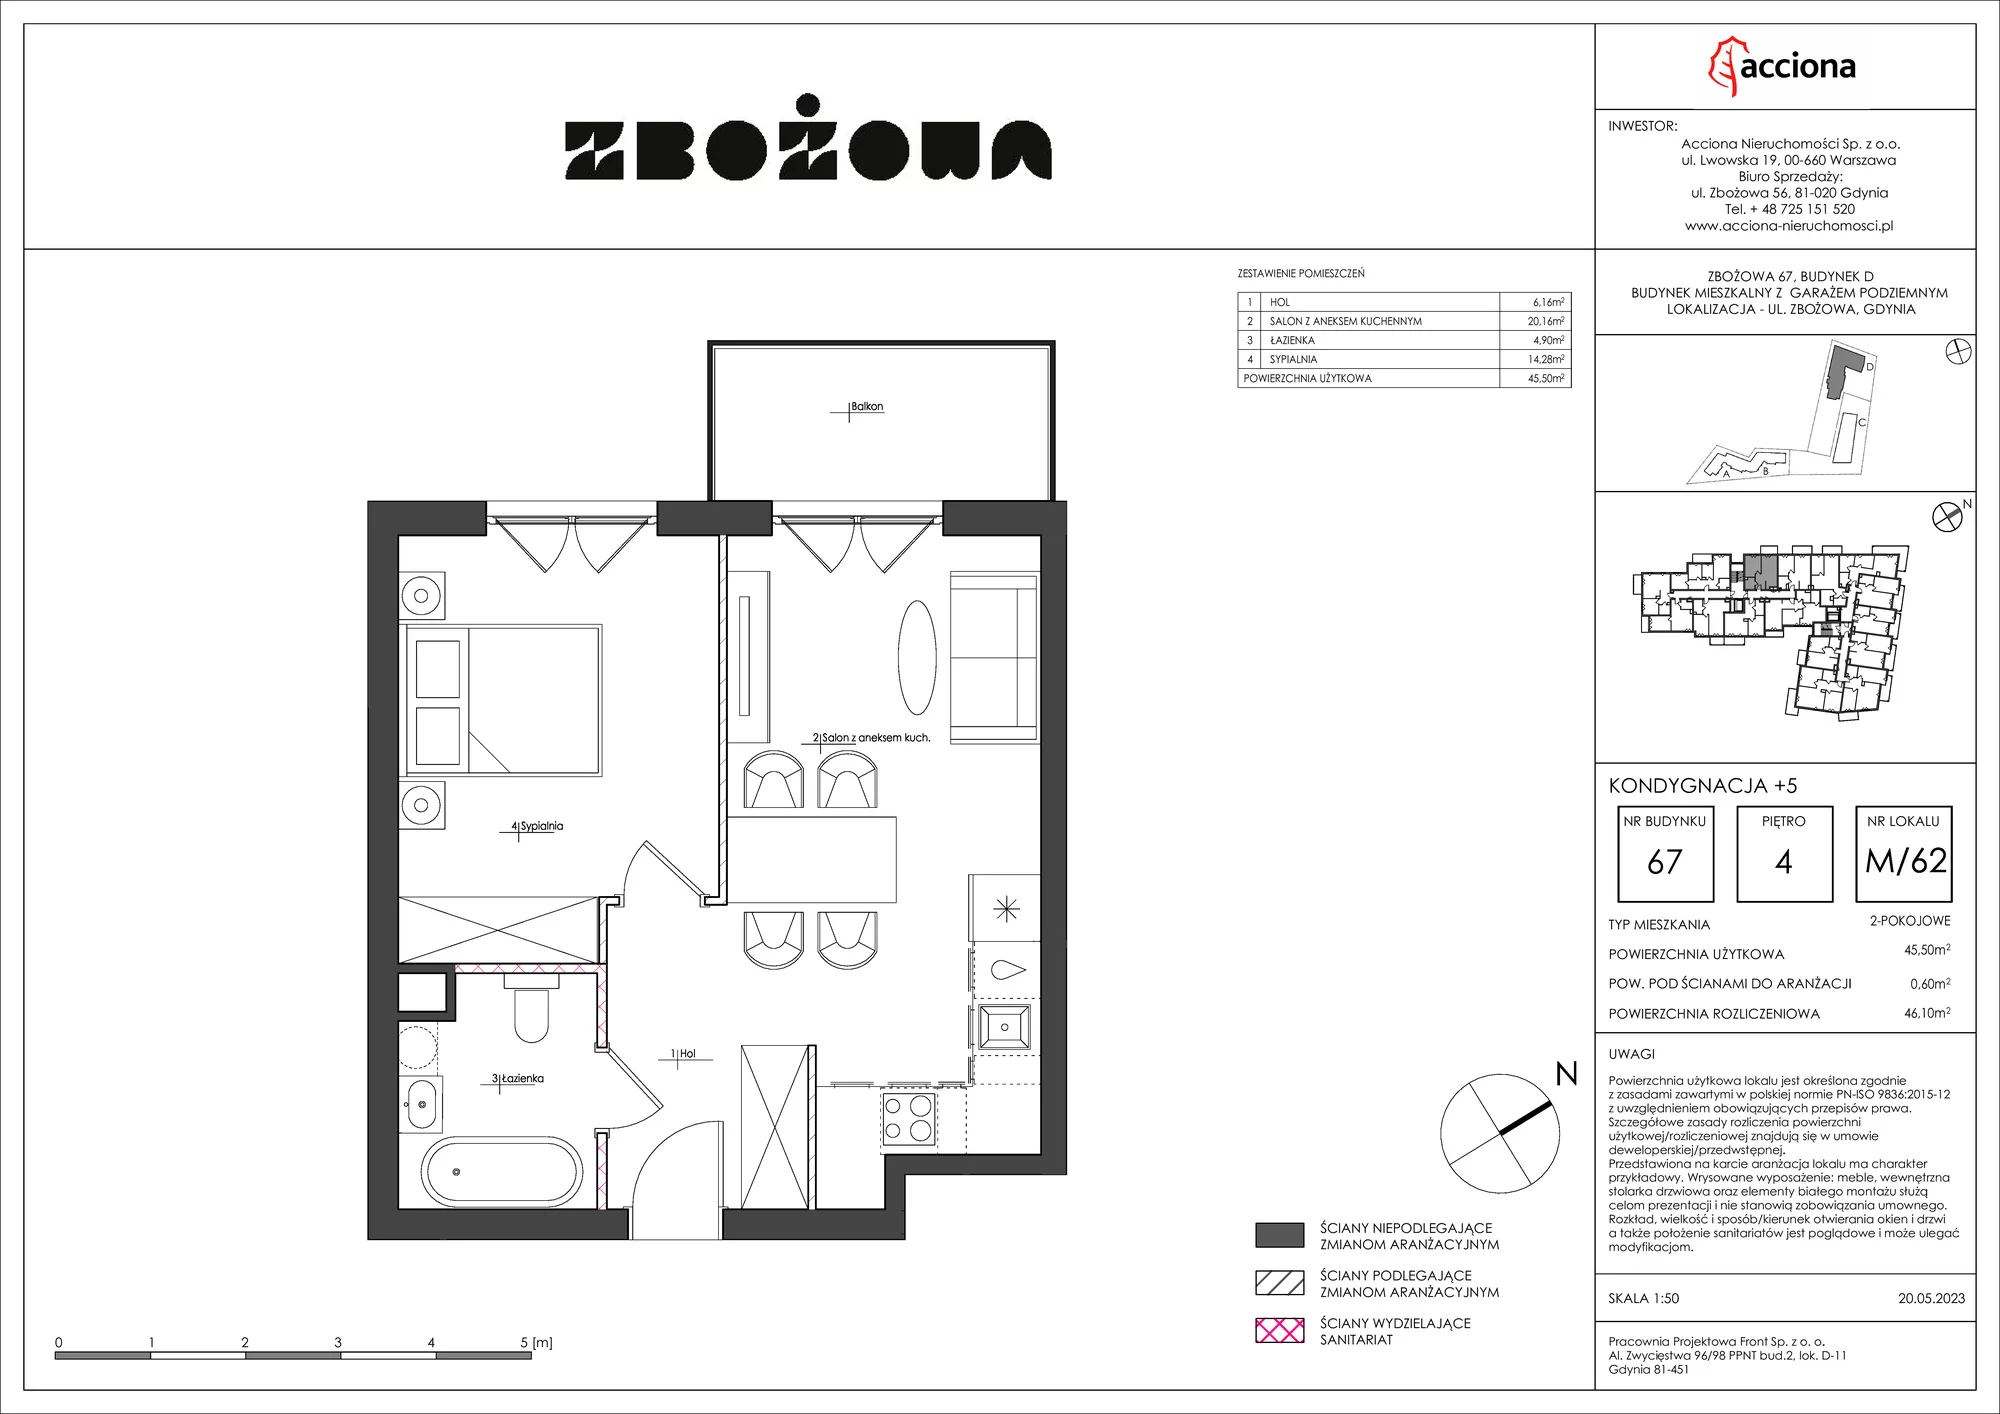 Mieszkanie 46,10 m², piętro 4, oferta nr 67.62, Zbożowa, Gdynia, Cisowa, ul. Zbożowa